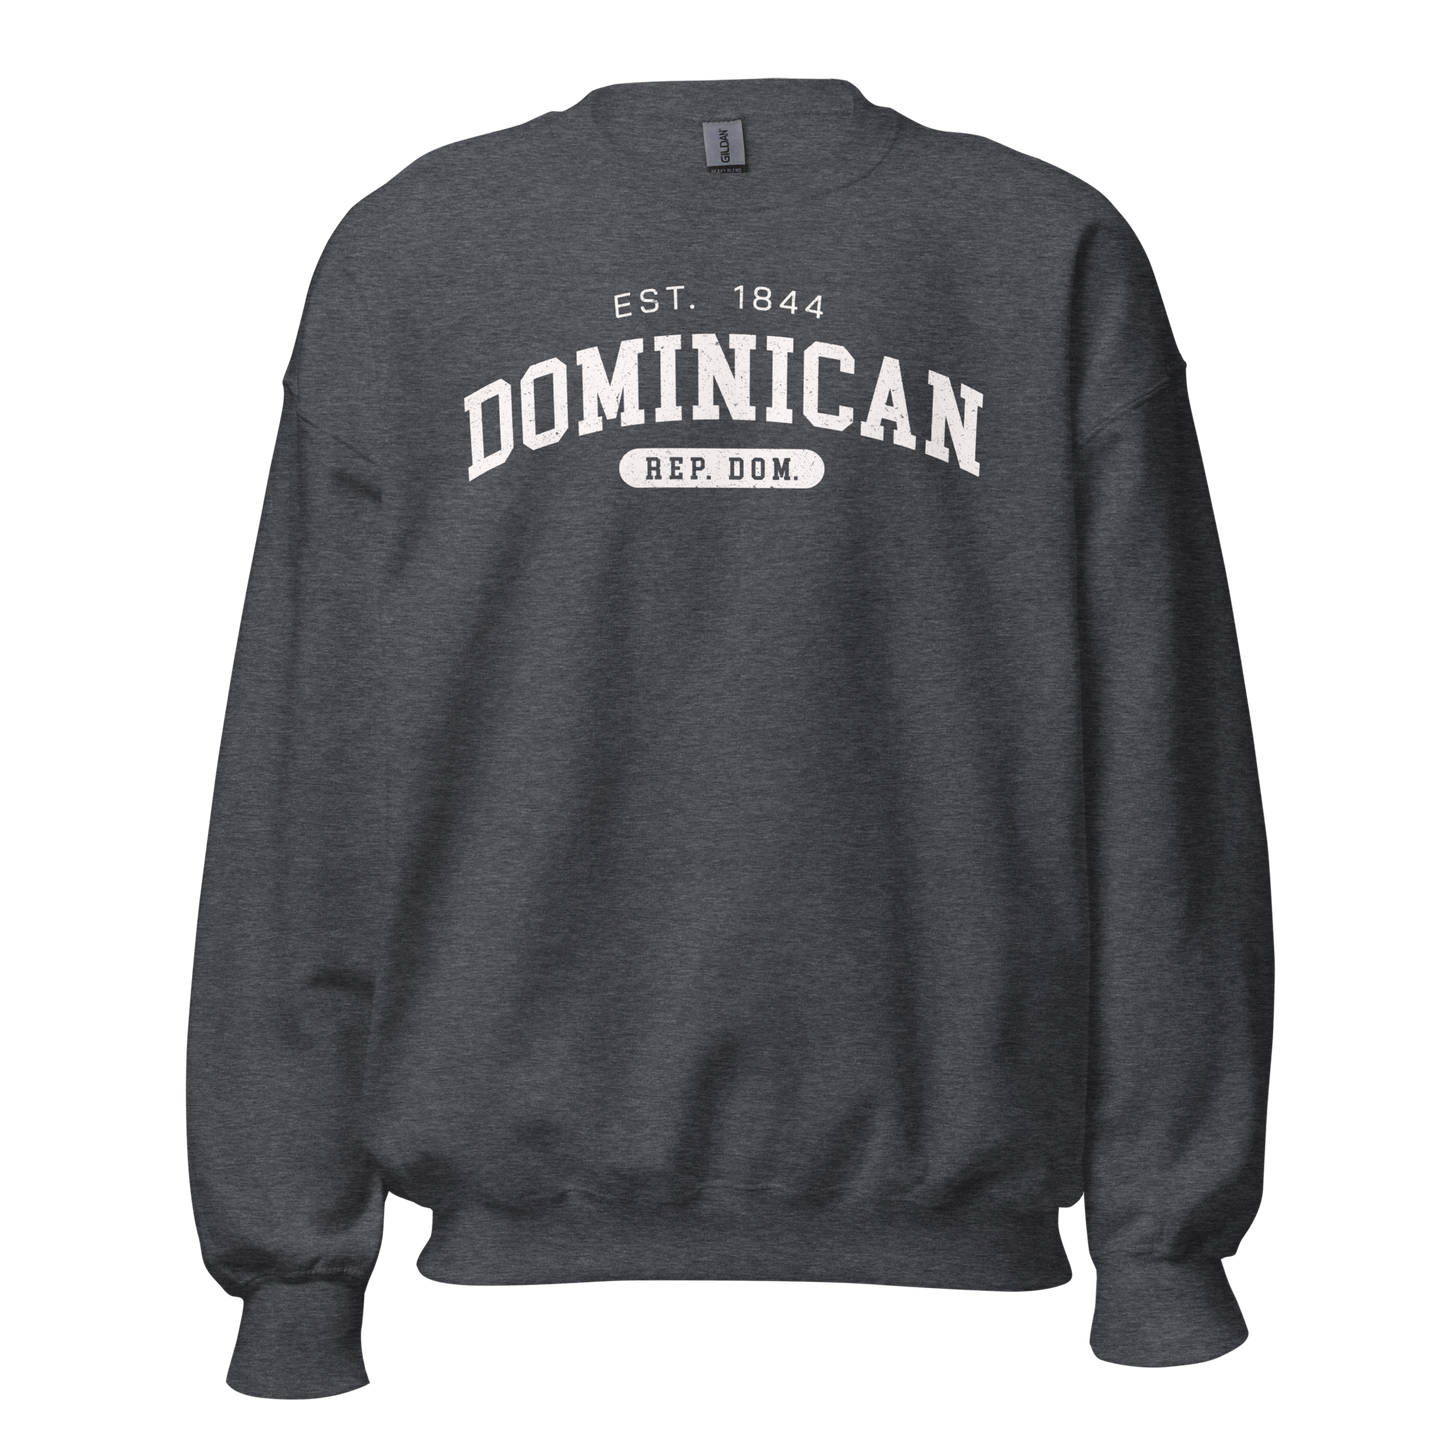 Dominican Unisex Sweatshirt